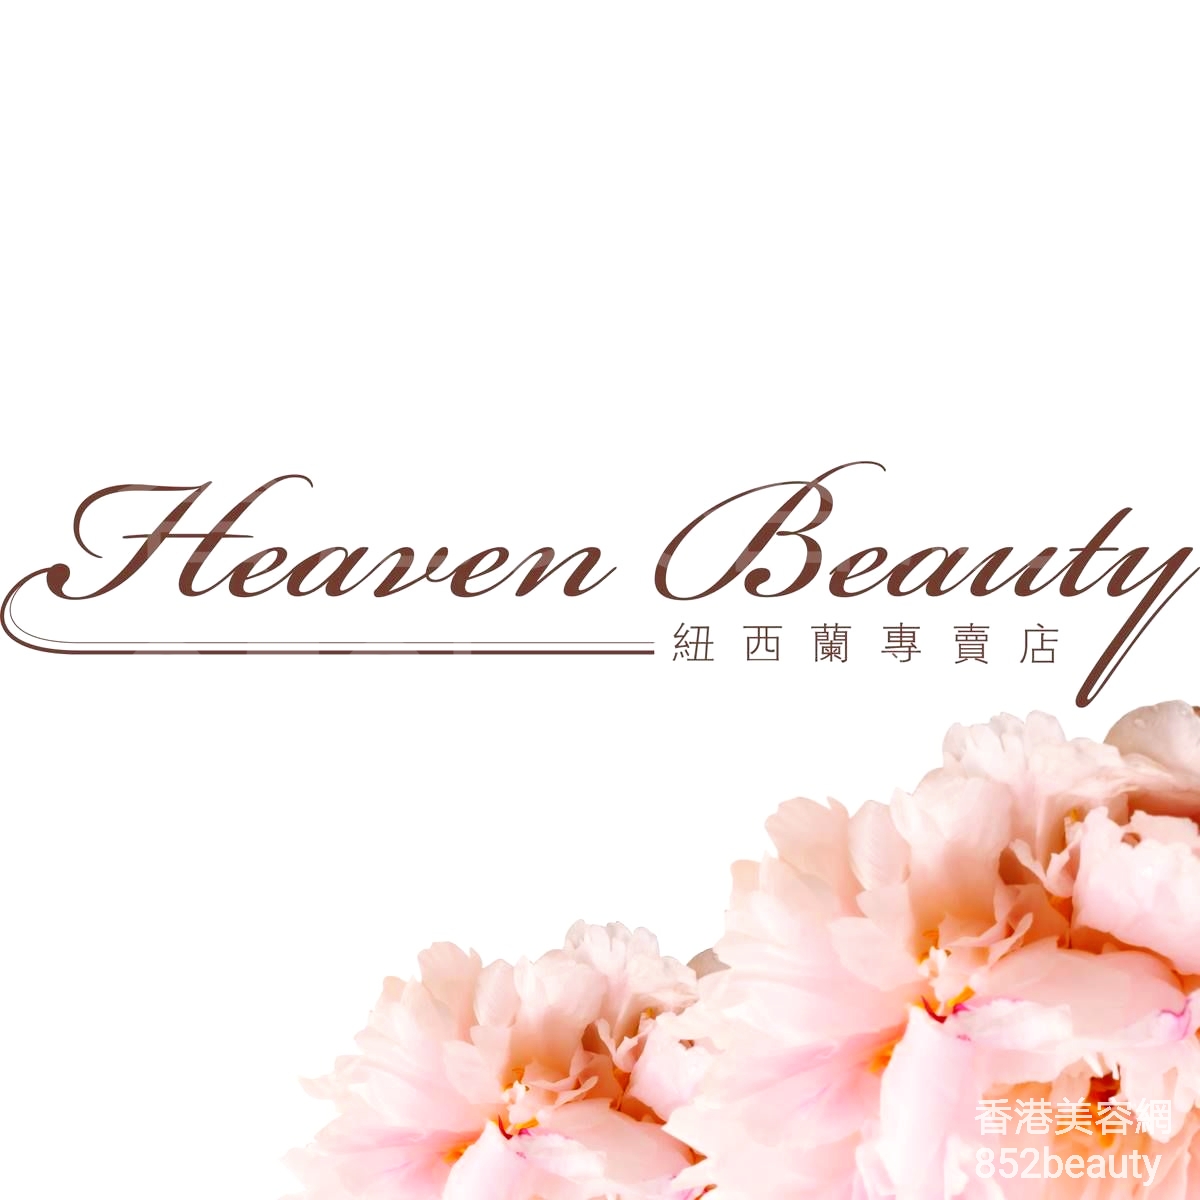 美容院: Heaven Beauty